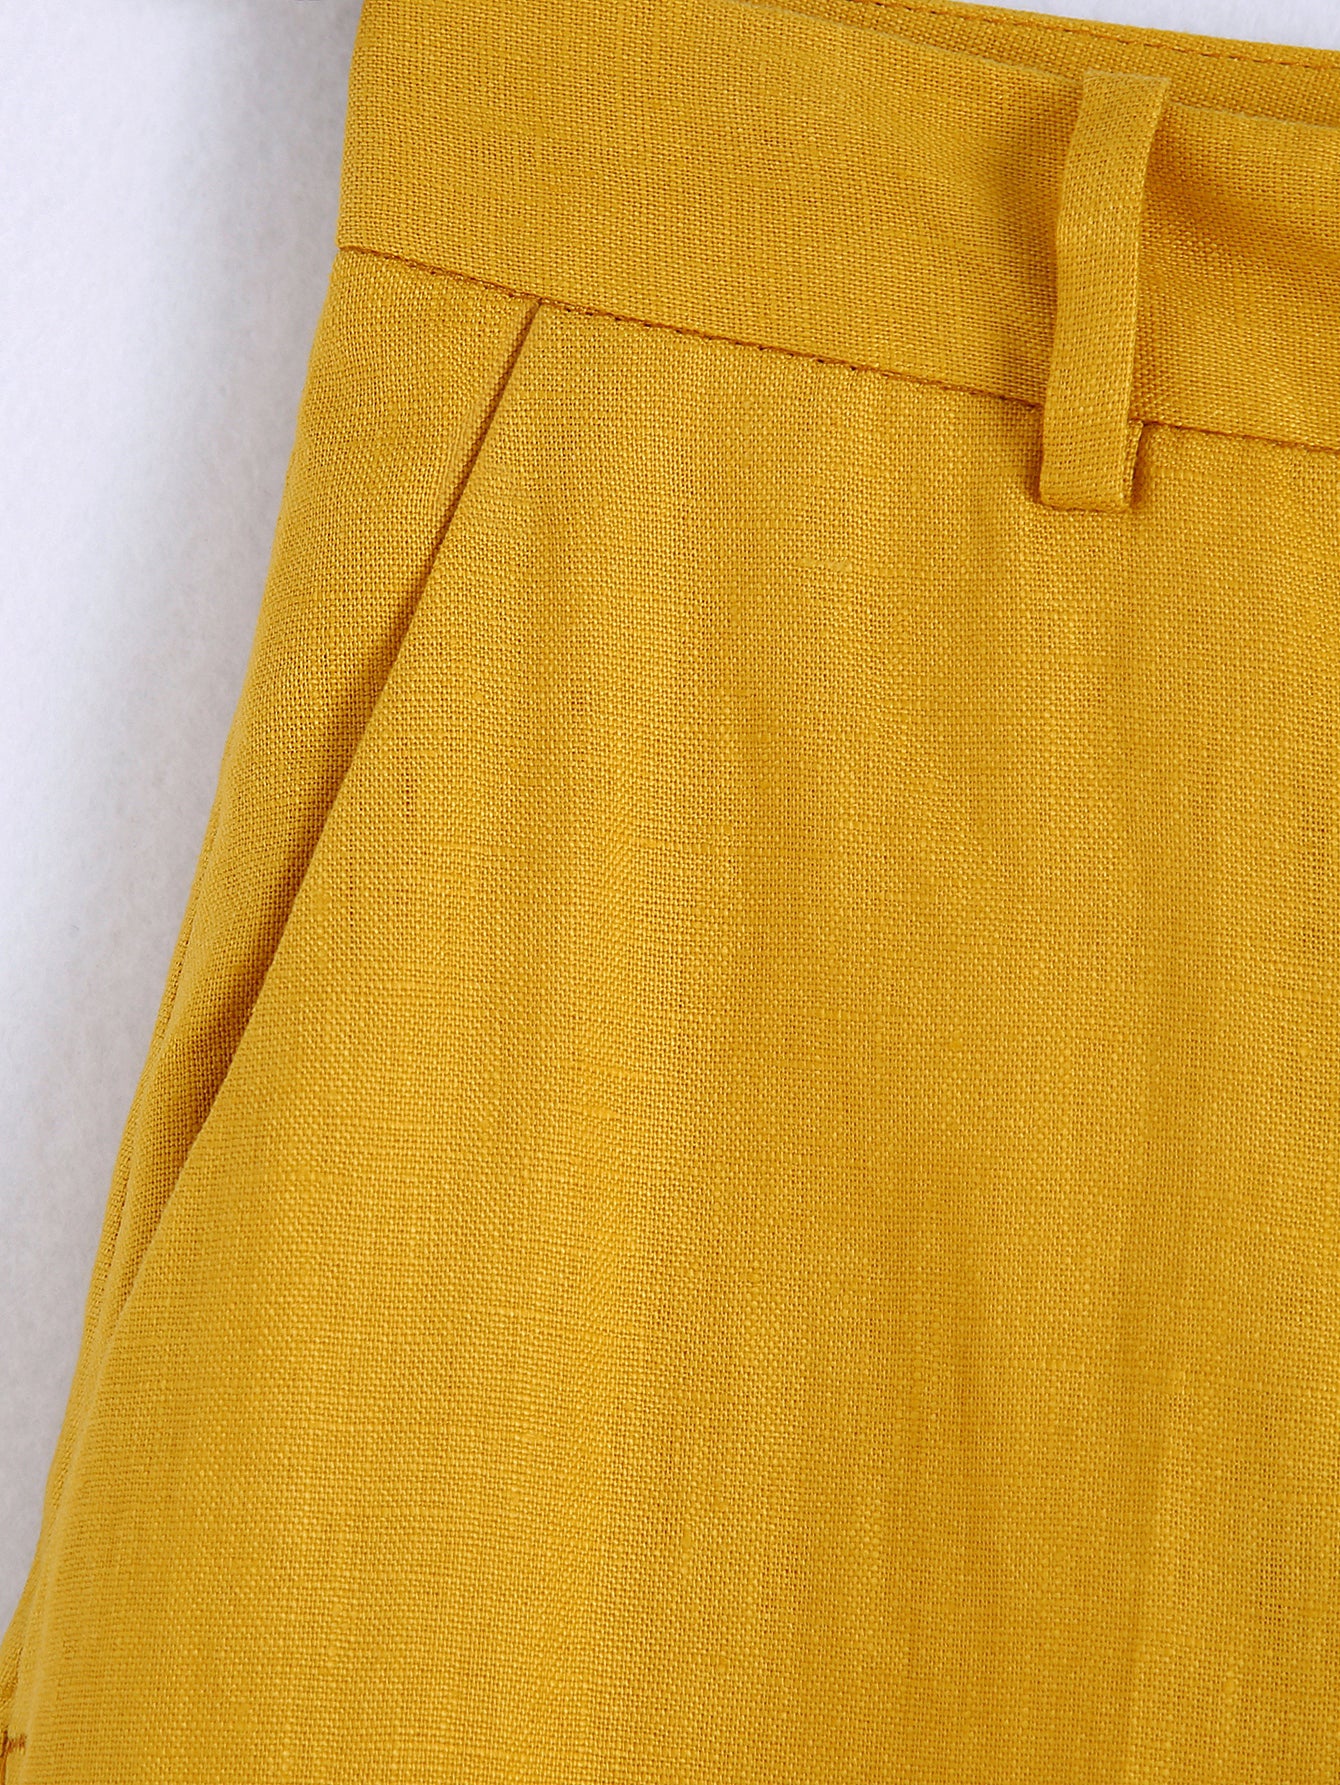 Express Editor High Waisted Linen-Blend Pintuck Trouser Pant Yellow Women's  4 Long